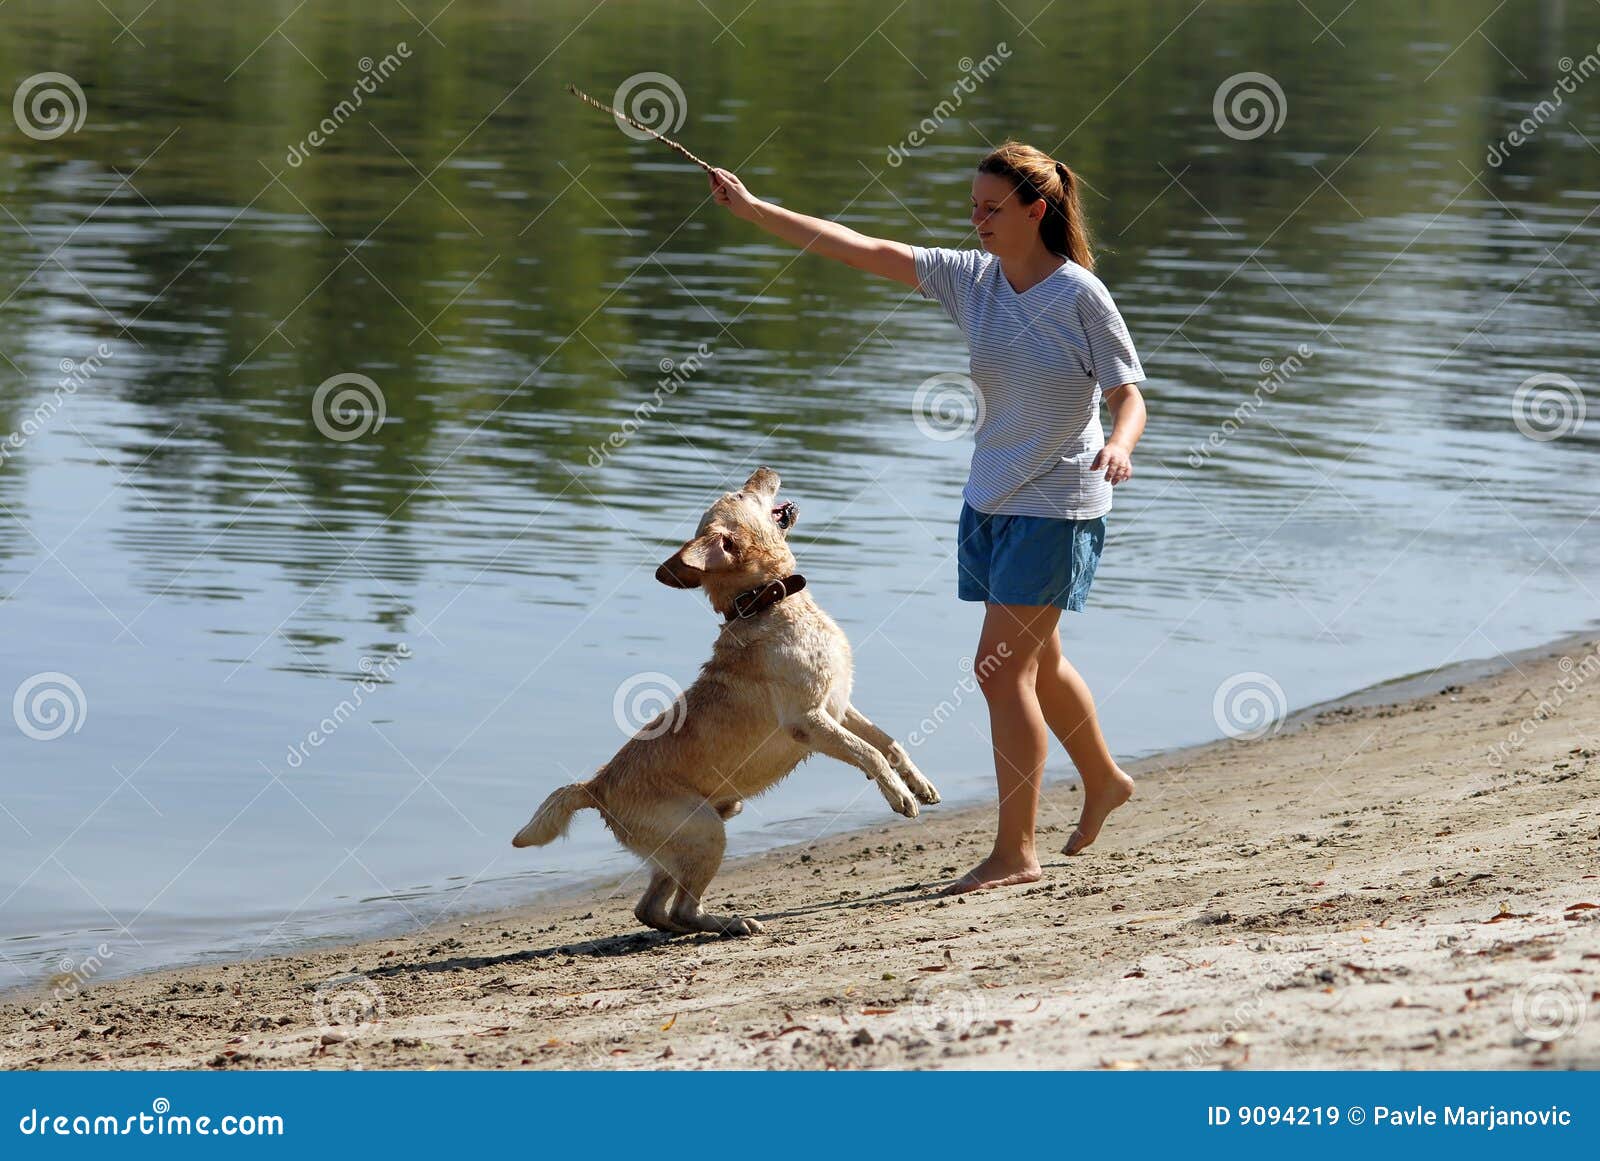 Hembra attracive joven y su perro que juegan cerca del agua